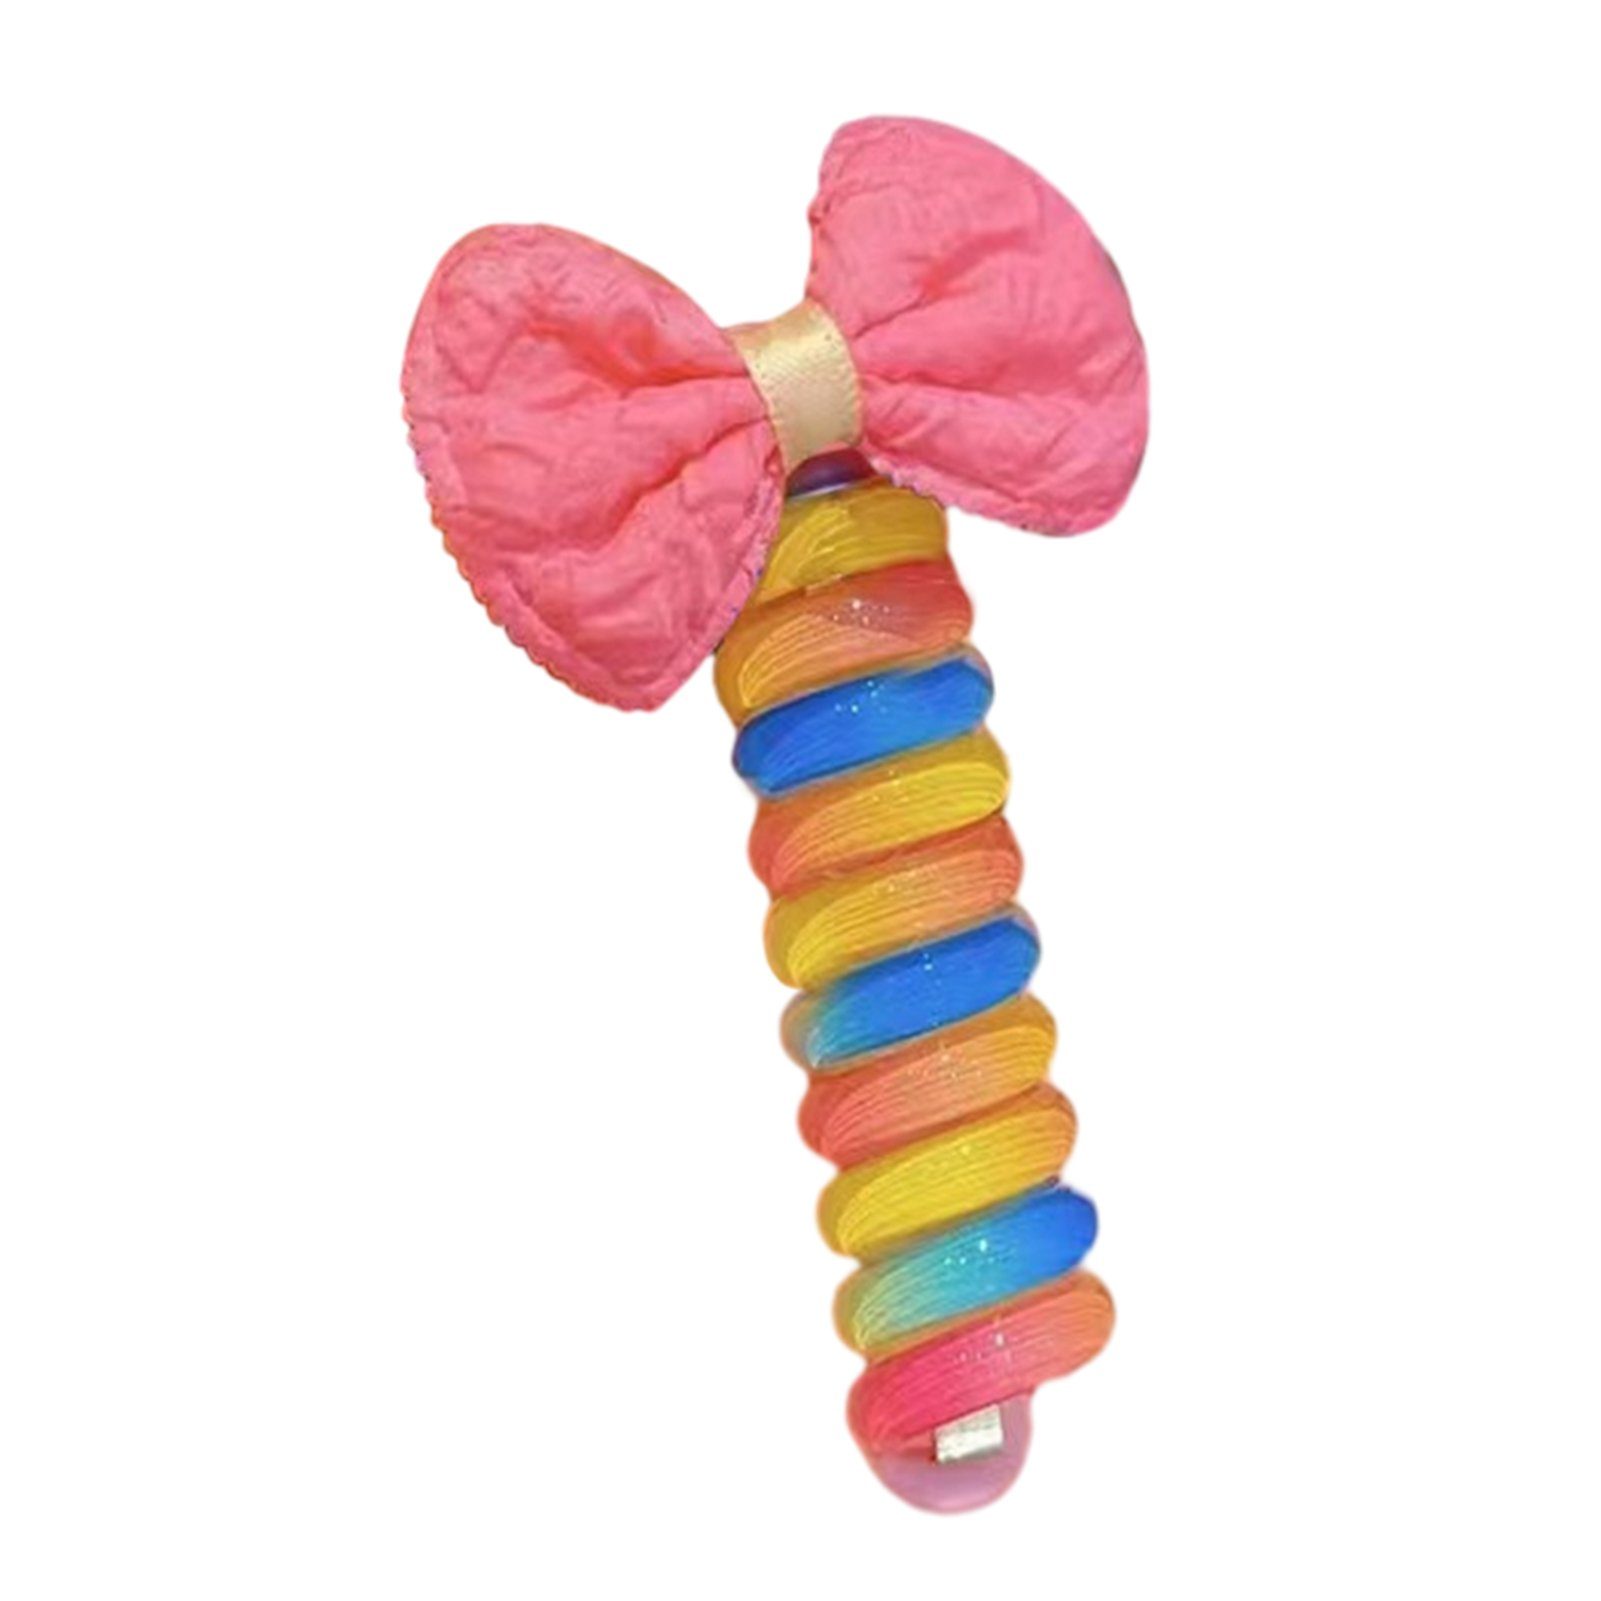 Blusmart Spiral-Haargummi Mädchen Bunte Schleife Telefonkabel Haarbänder Wiederverwendbare DIY, Spiral-Haargummi pink cloth bow